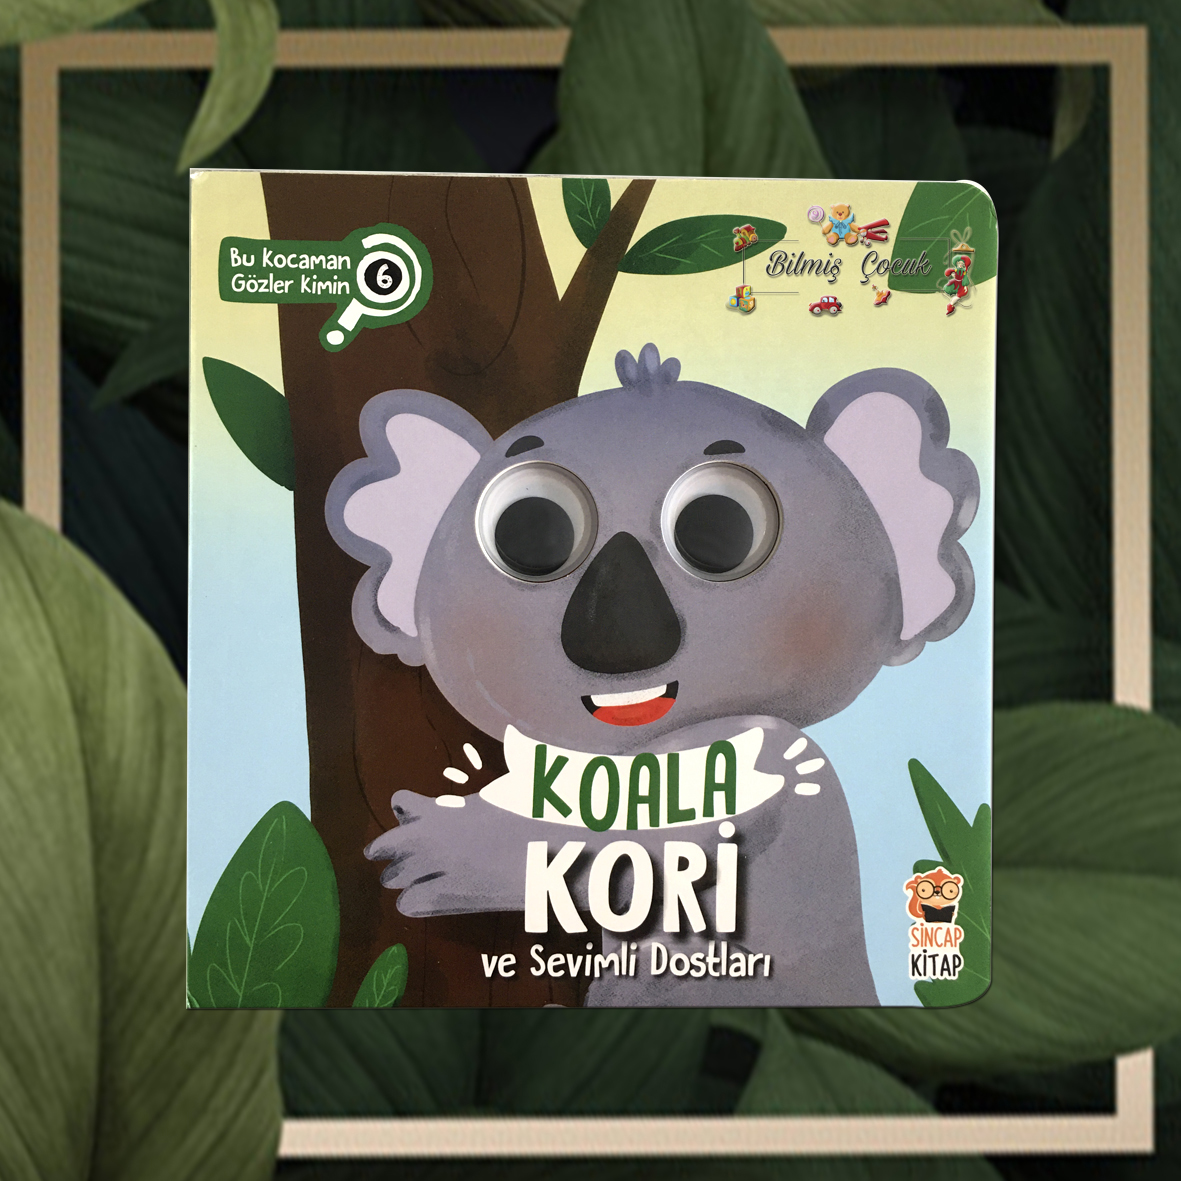 Koala Kori ve Sevimli Dostları – Bu Kocaman Gözler Kimin?